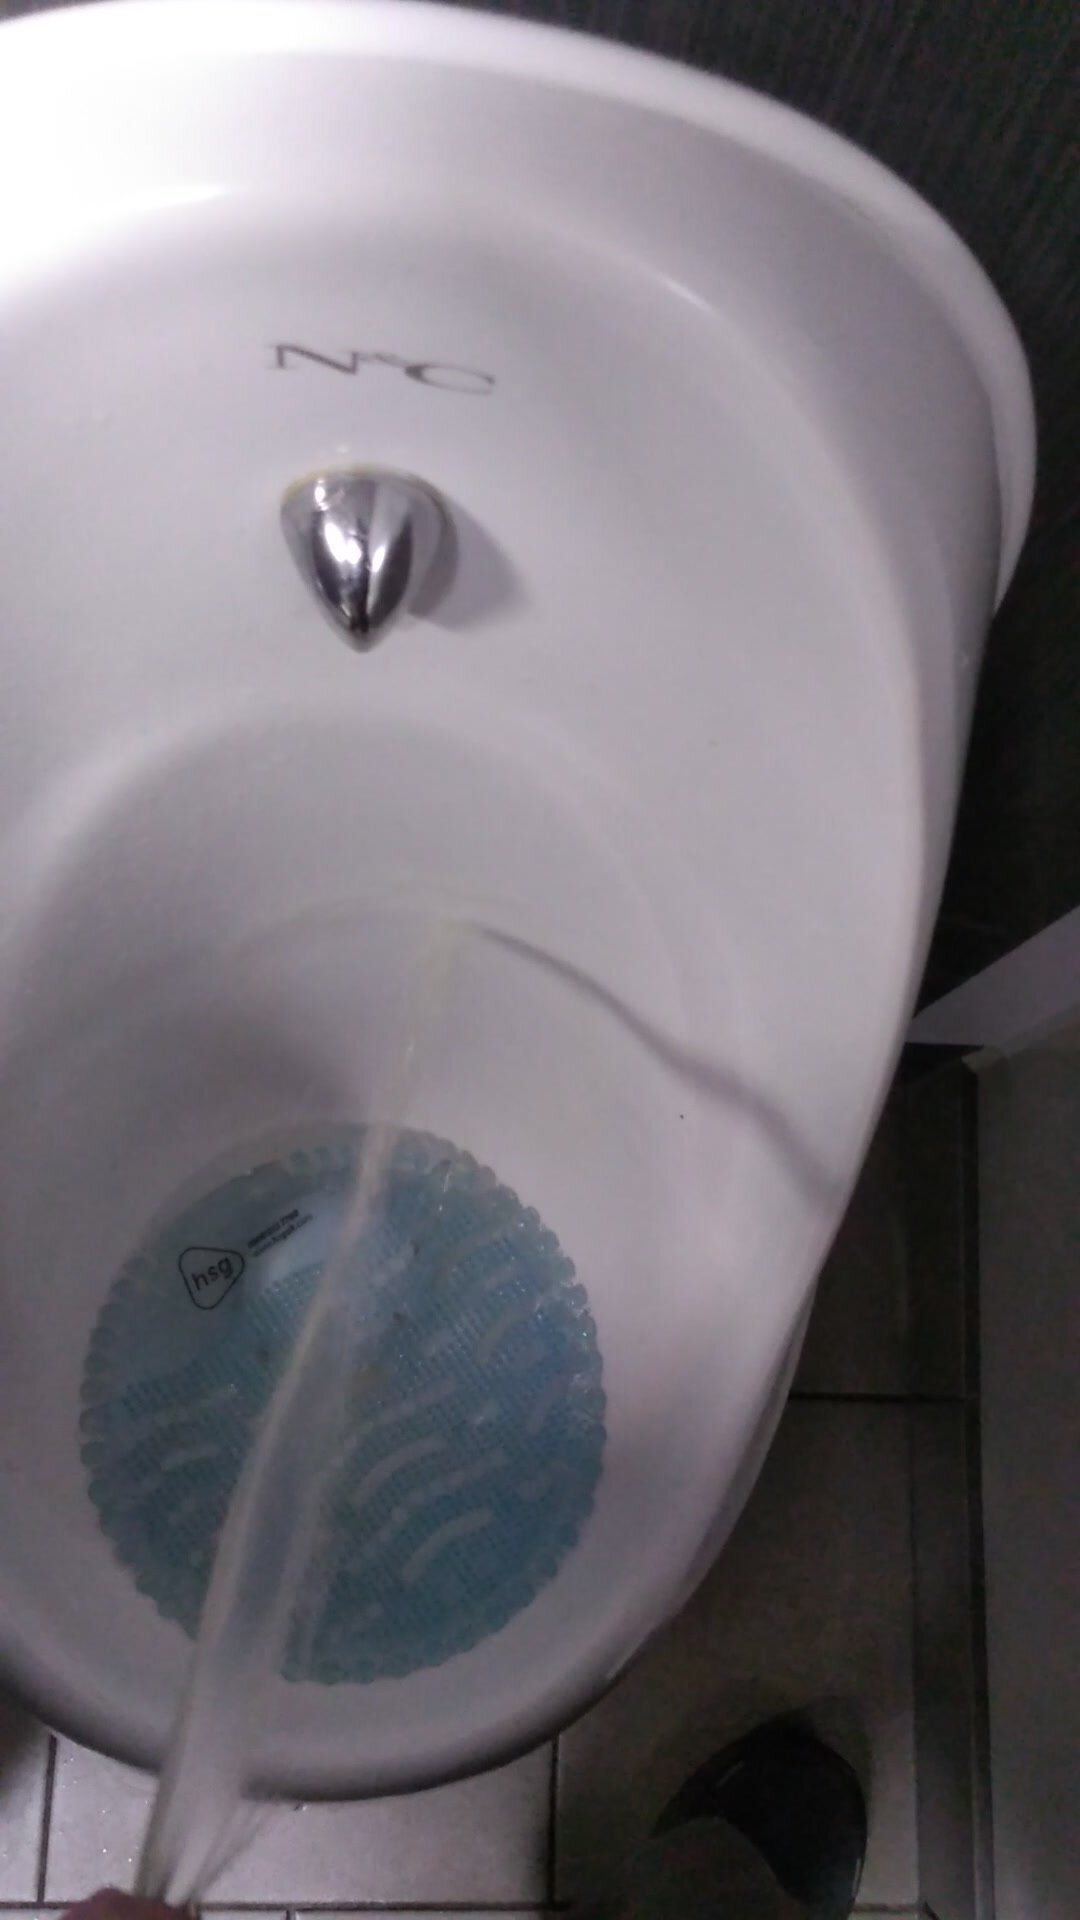 My toilet piss